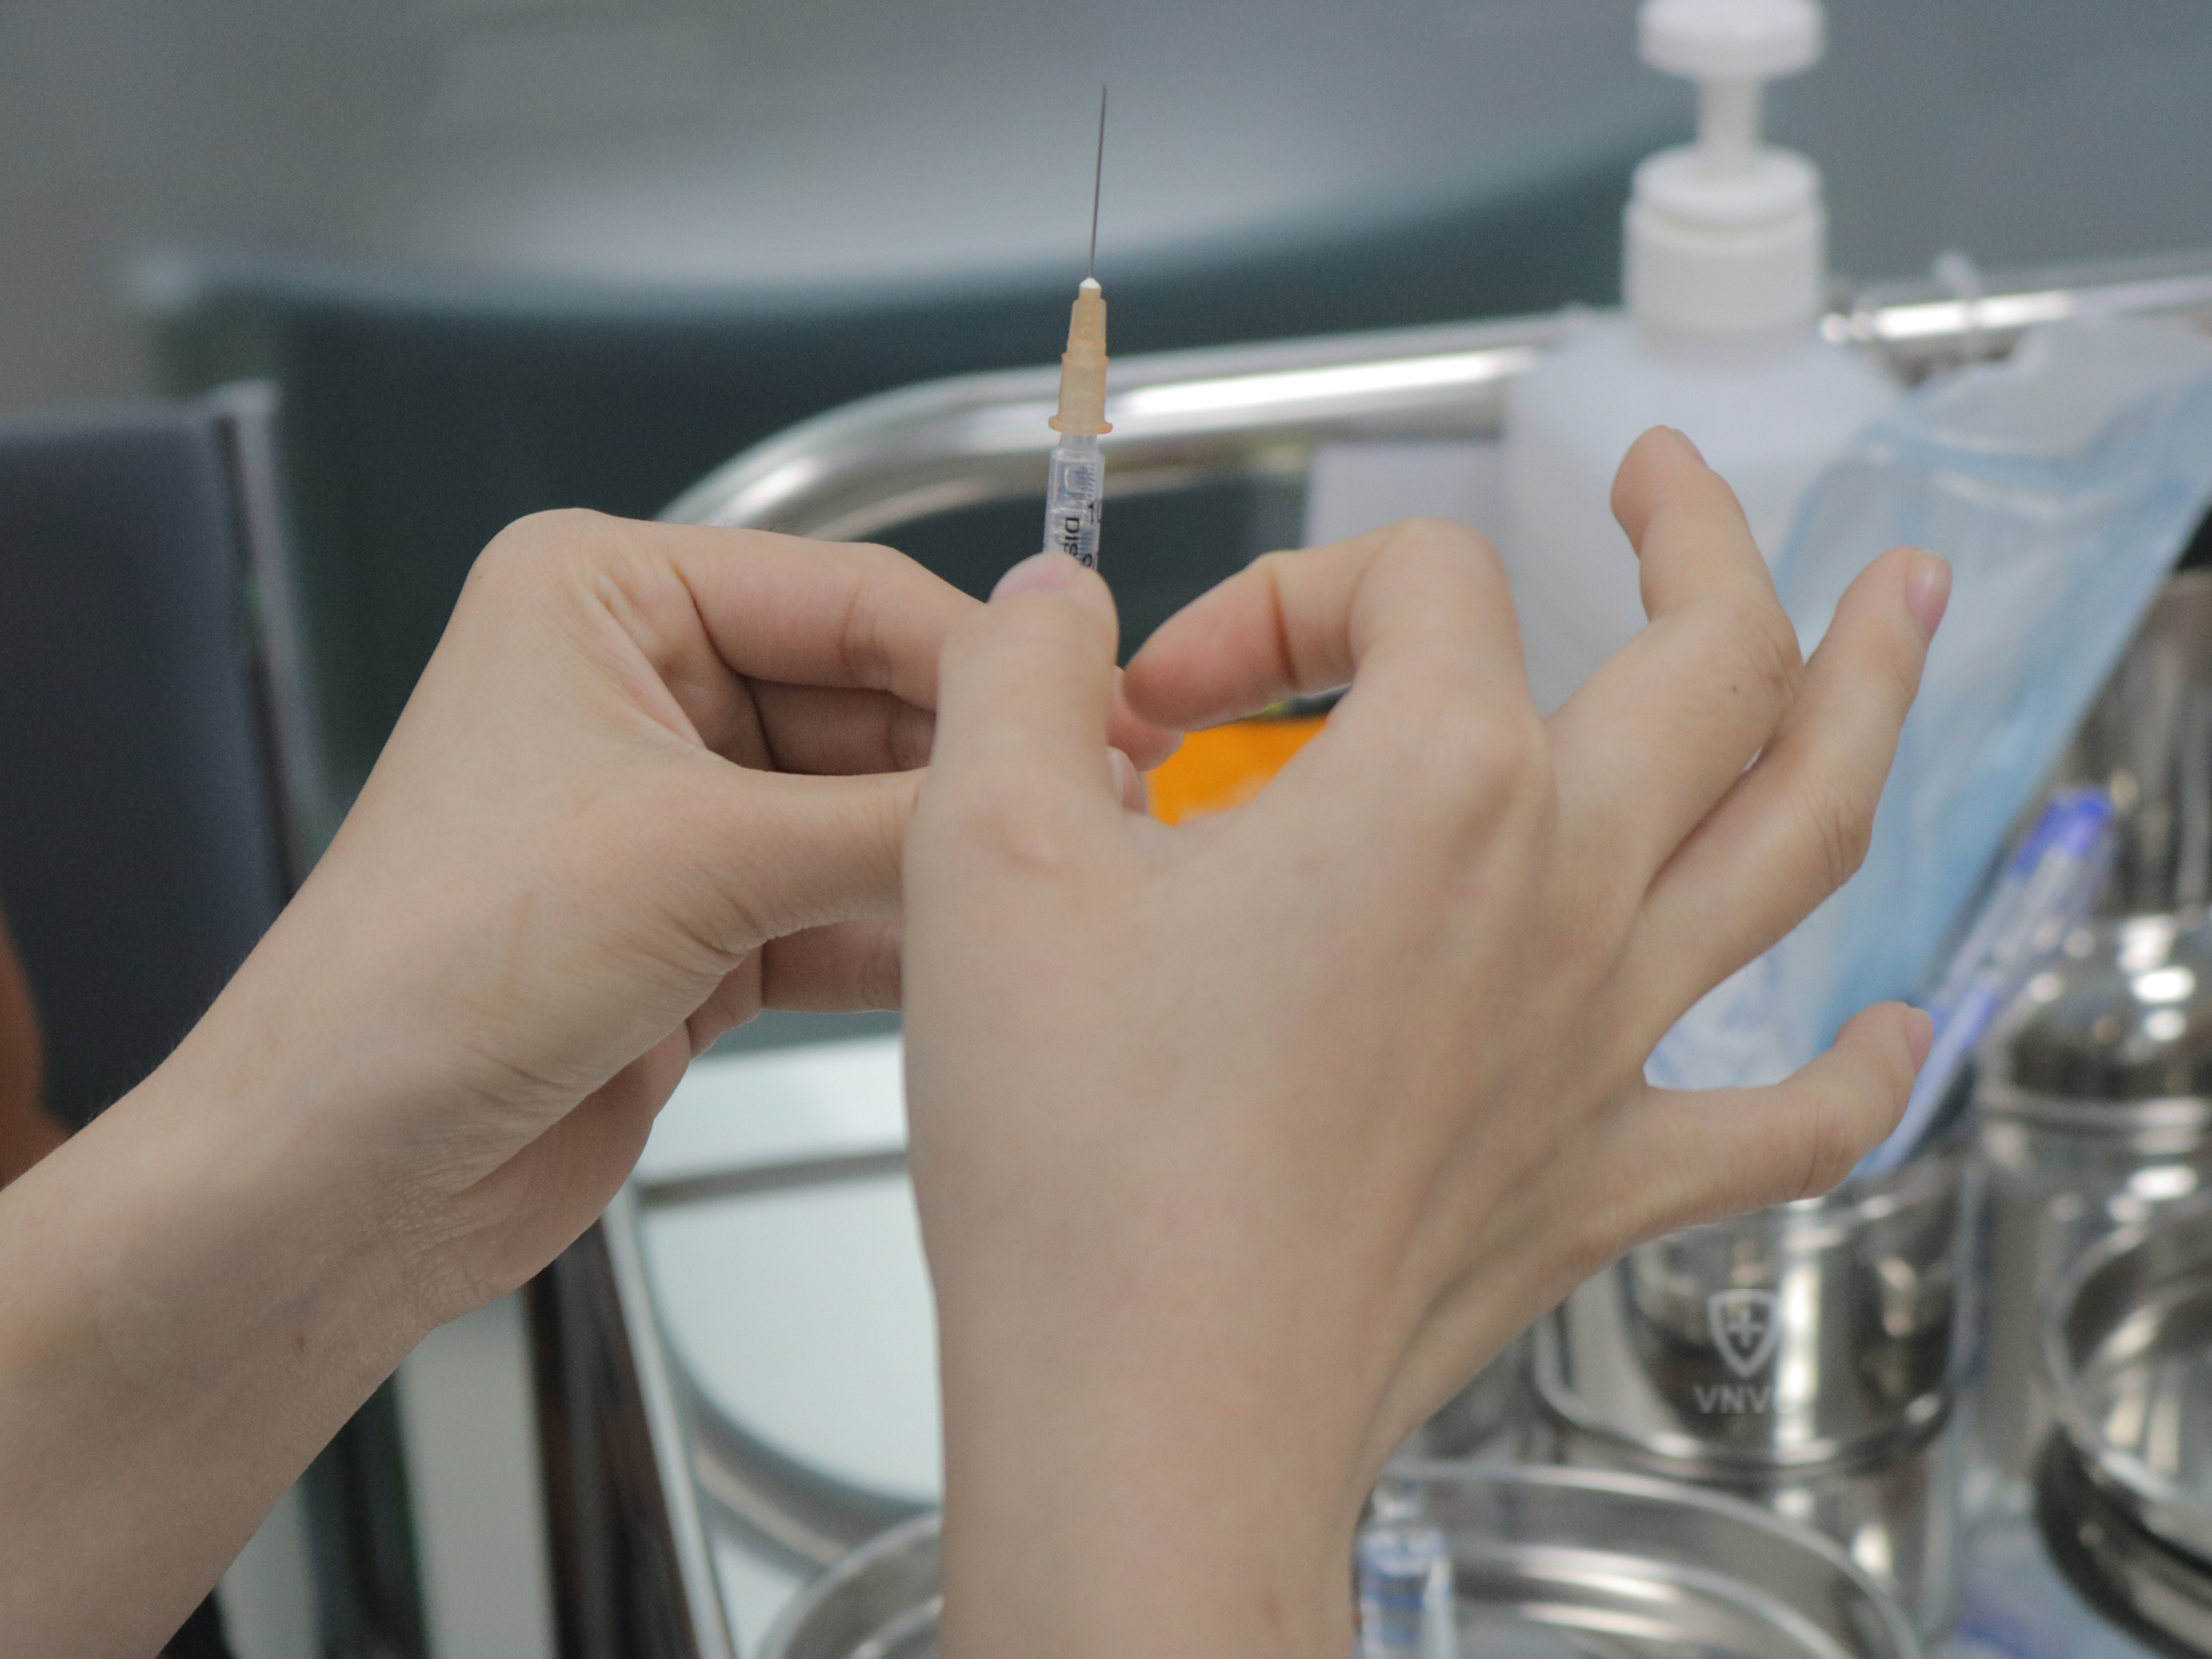 Lần đầu tiên Việt Nam có vaccine phòng sốt xuất huyết